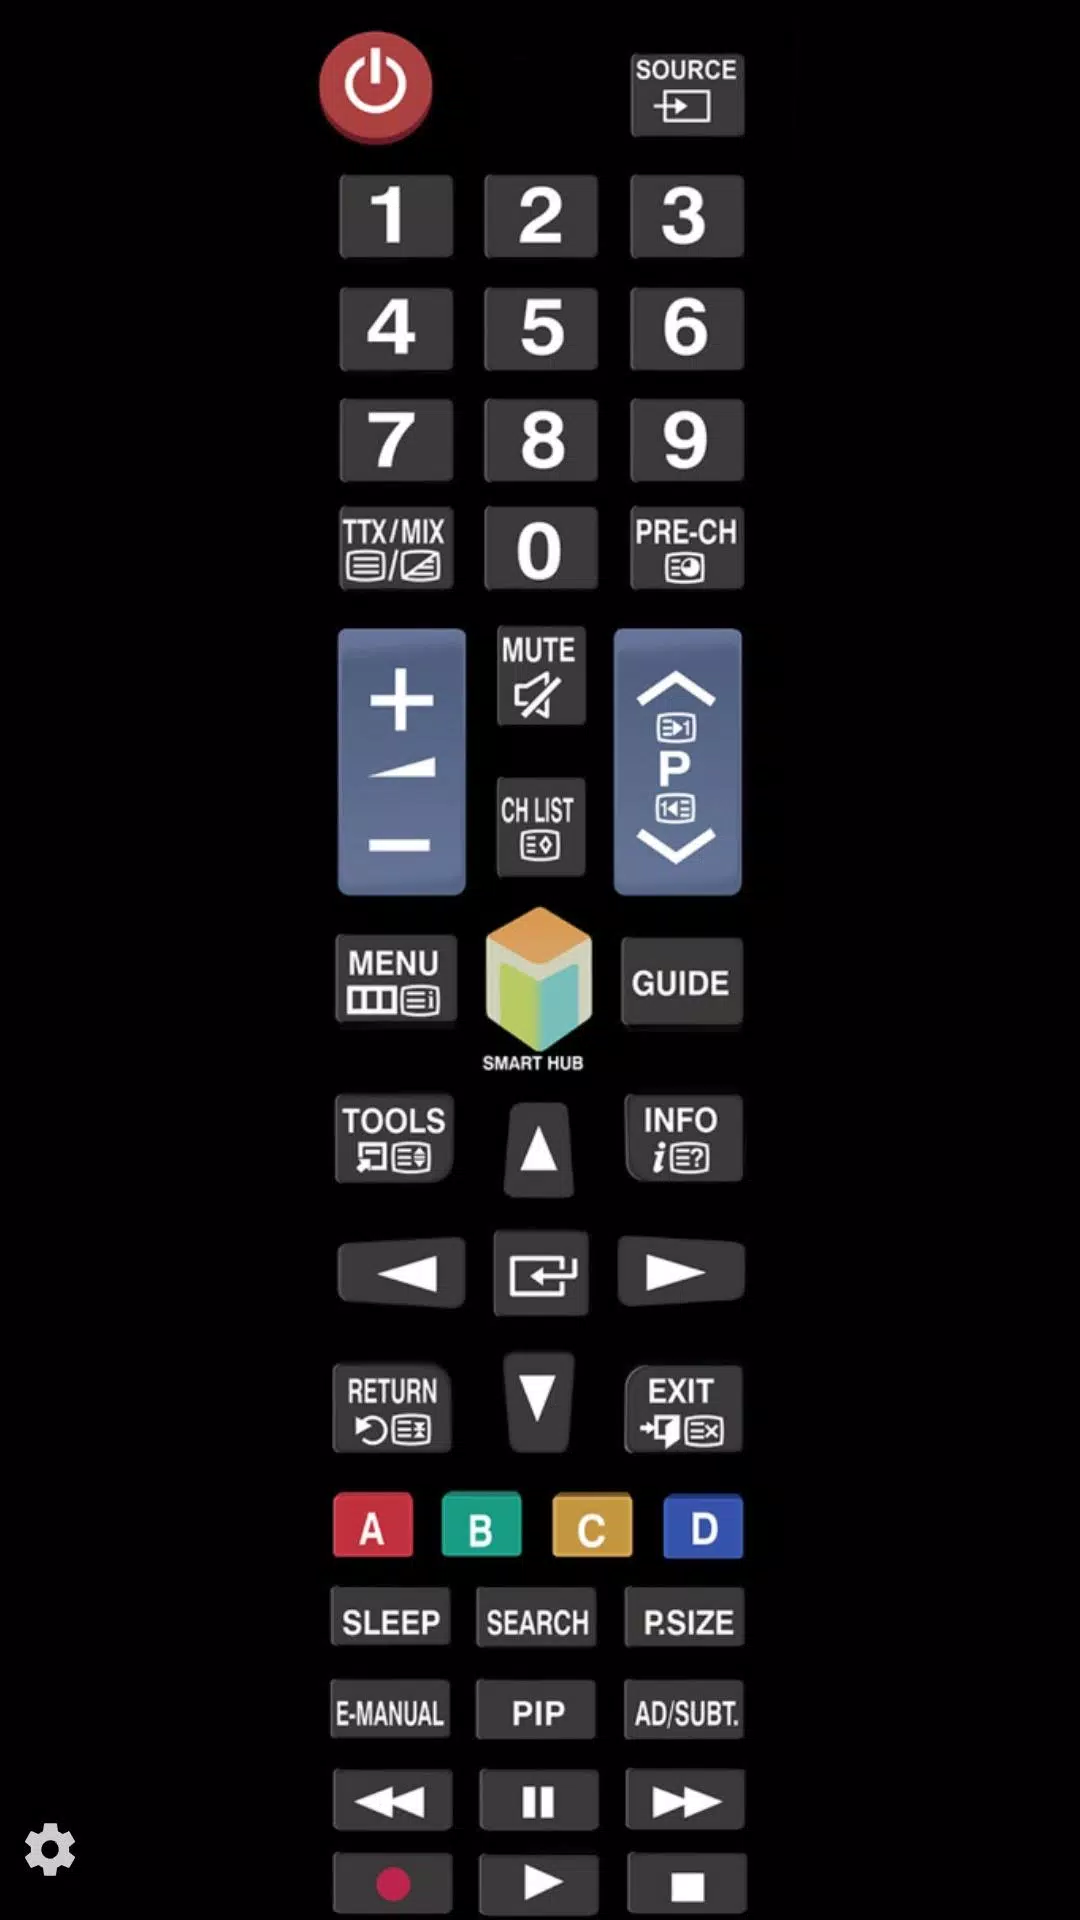 Descarga de APK de TV (Samsung) Remote Control para Android